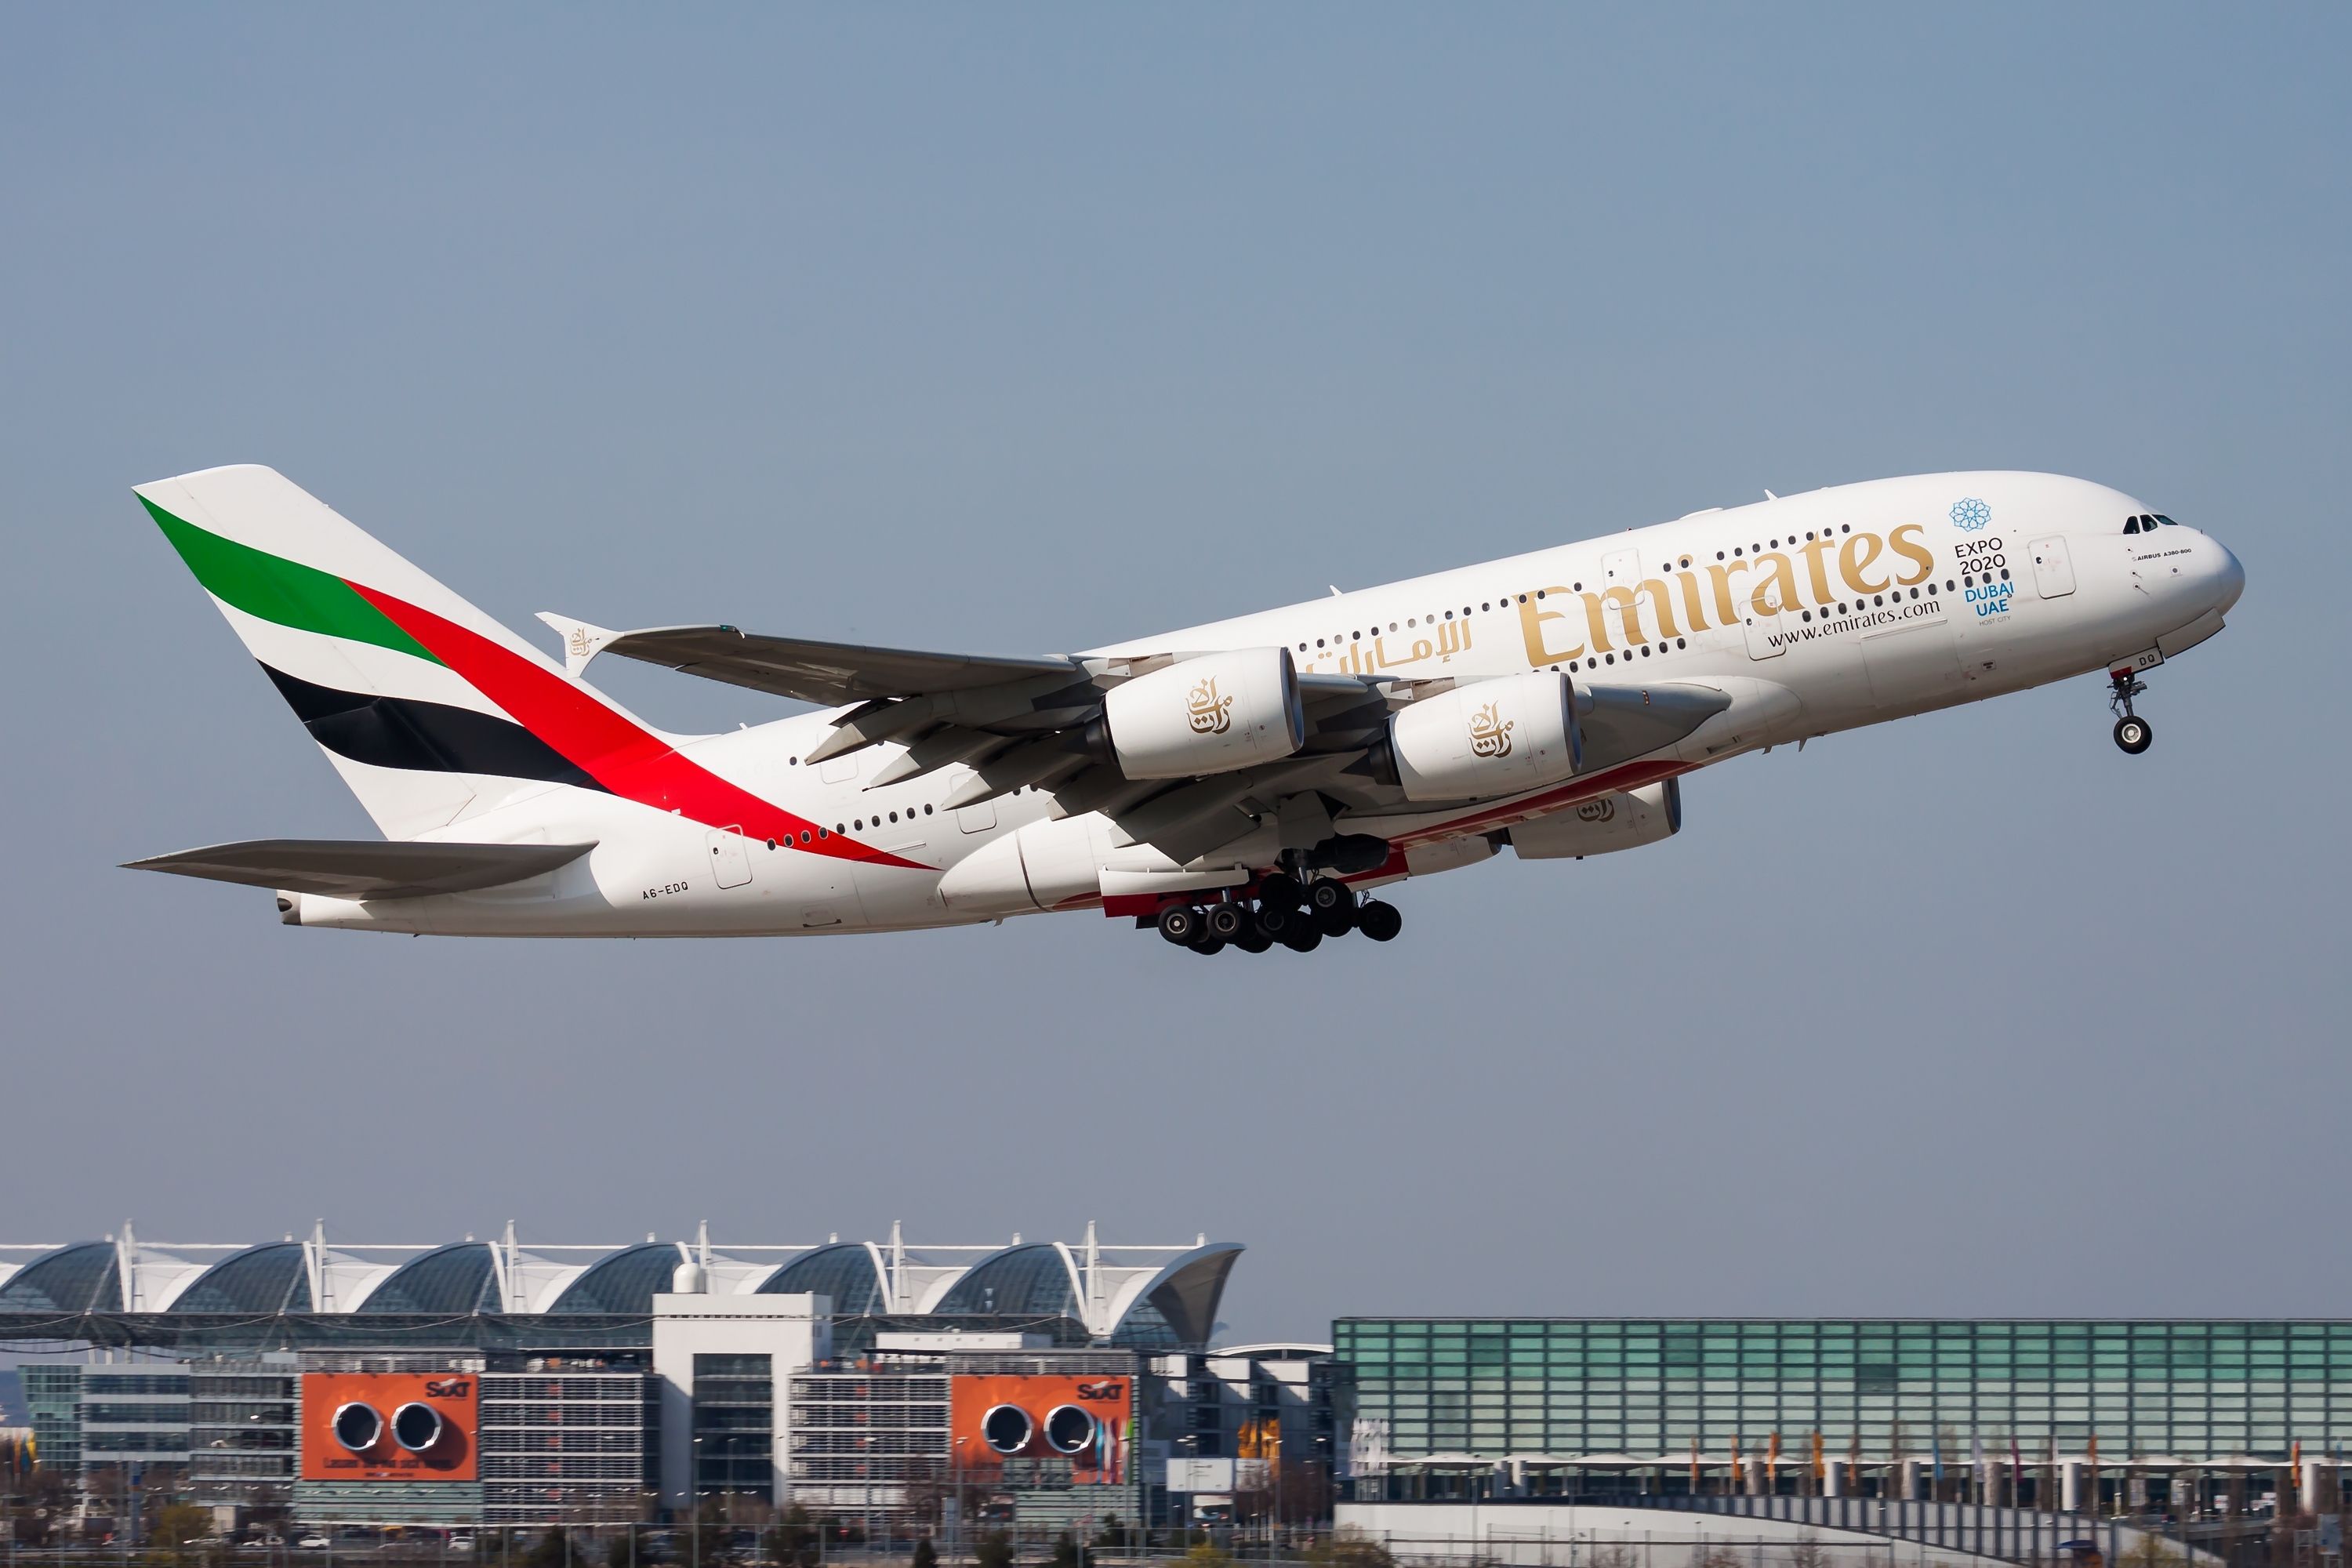 Emirates Airbus A380 departing Munich Airport MUC shutterstock_2341930795